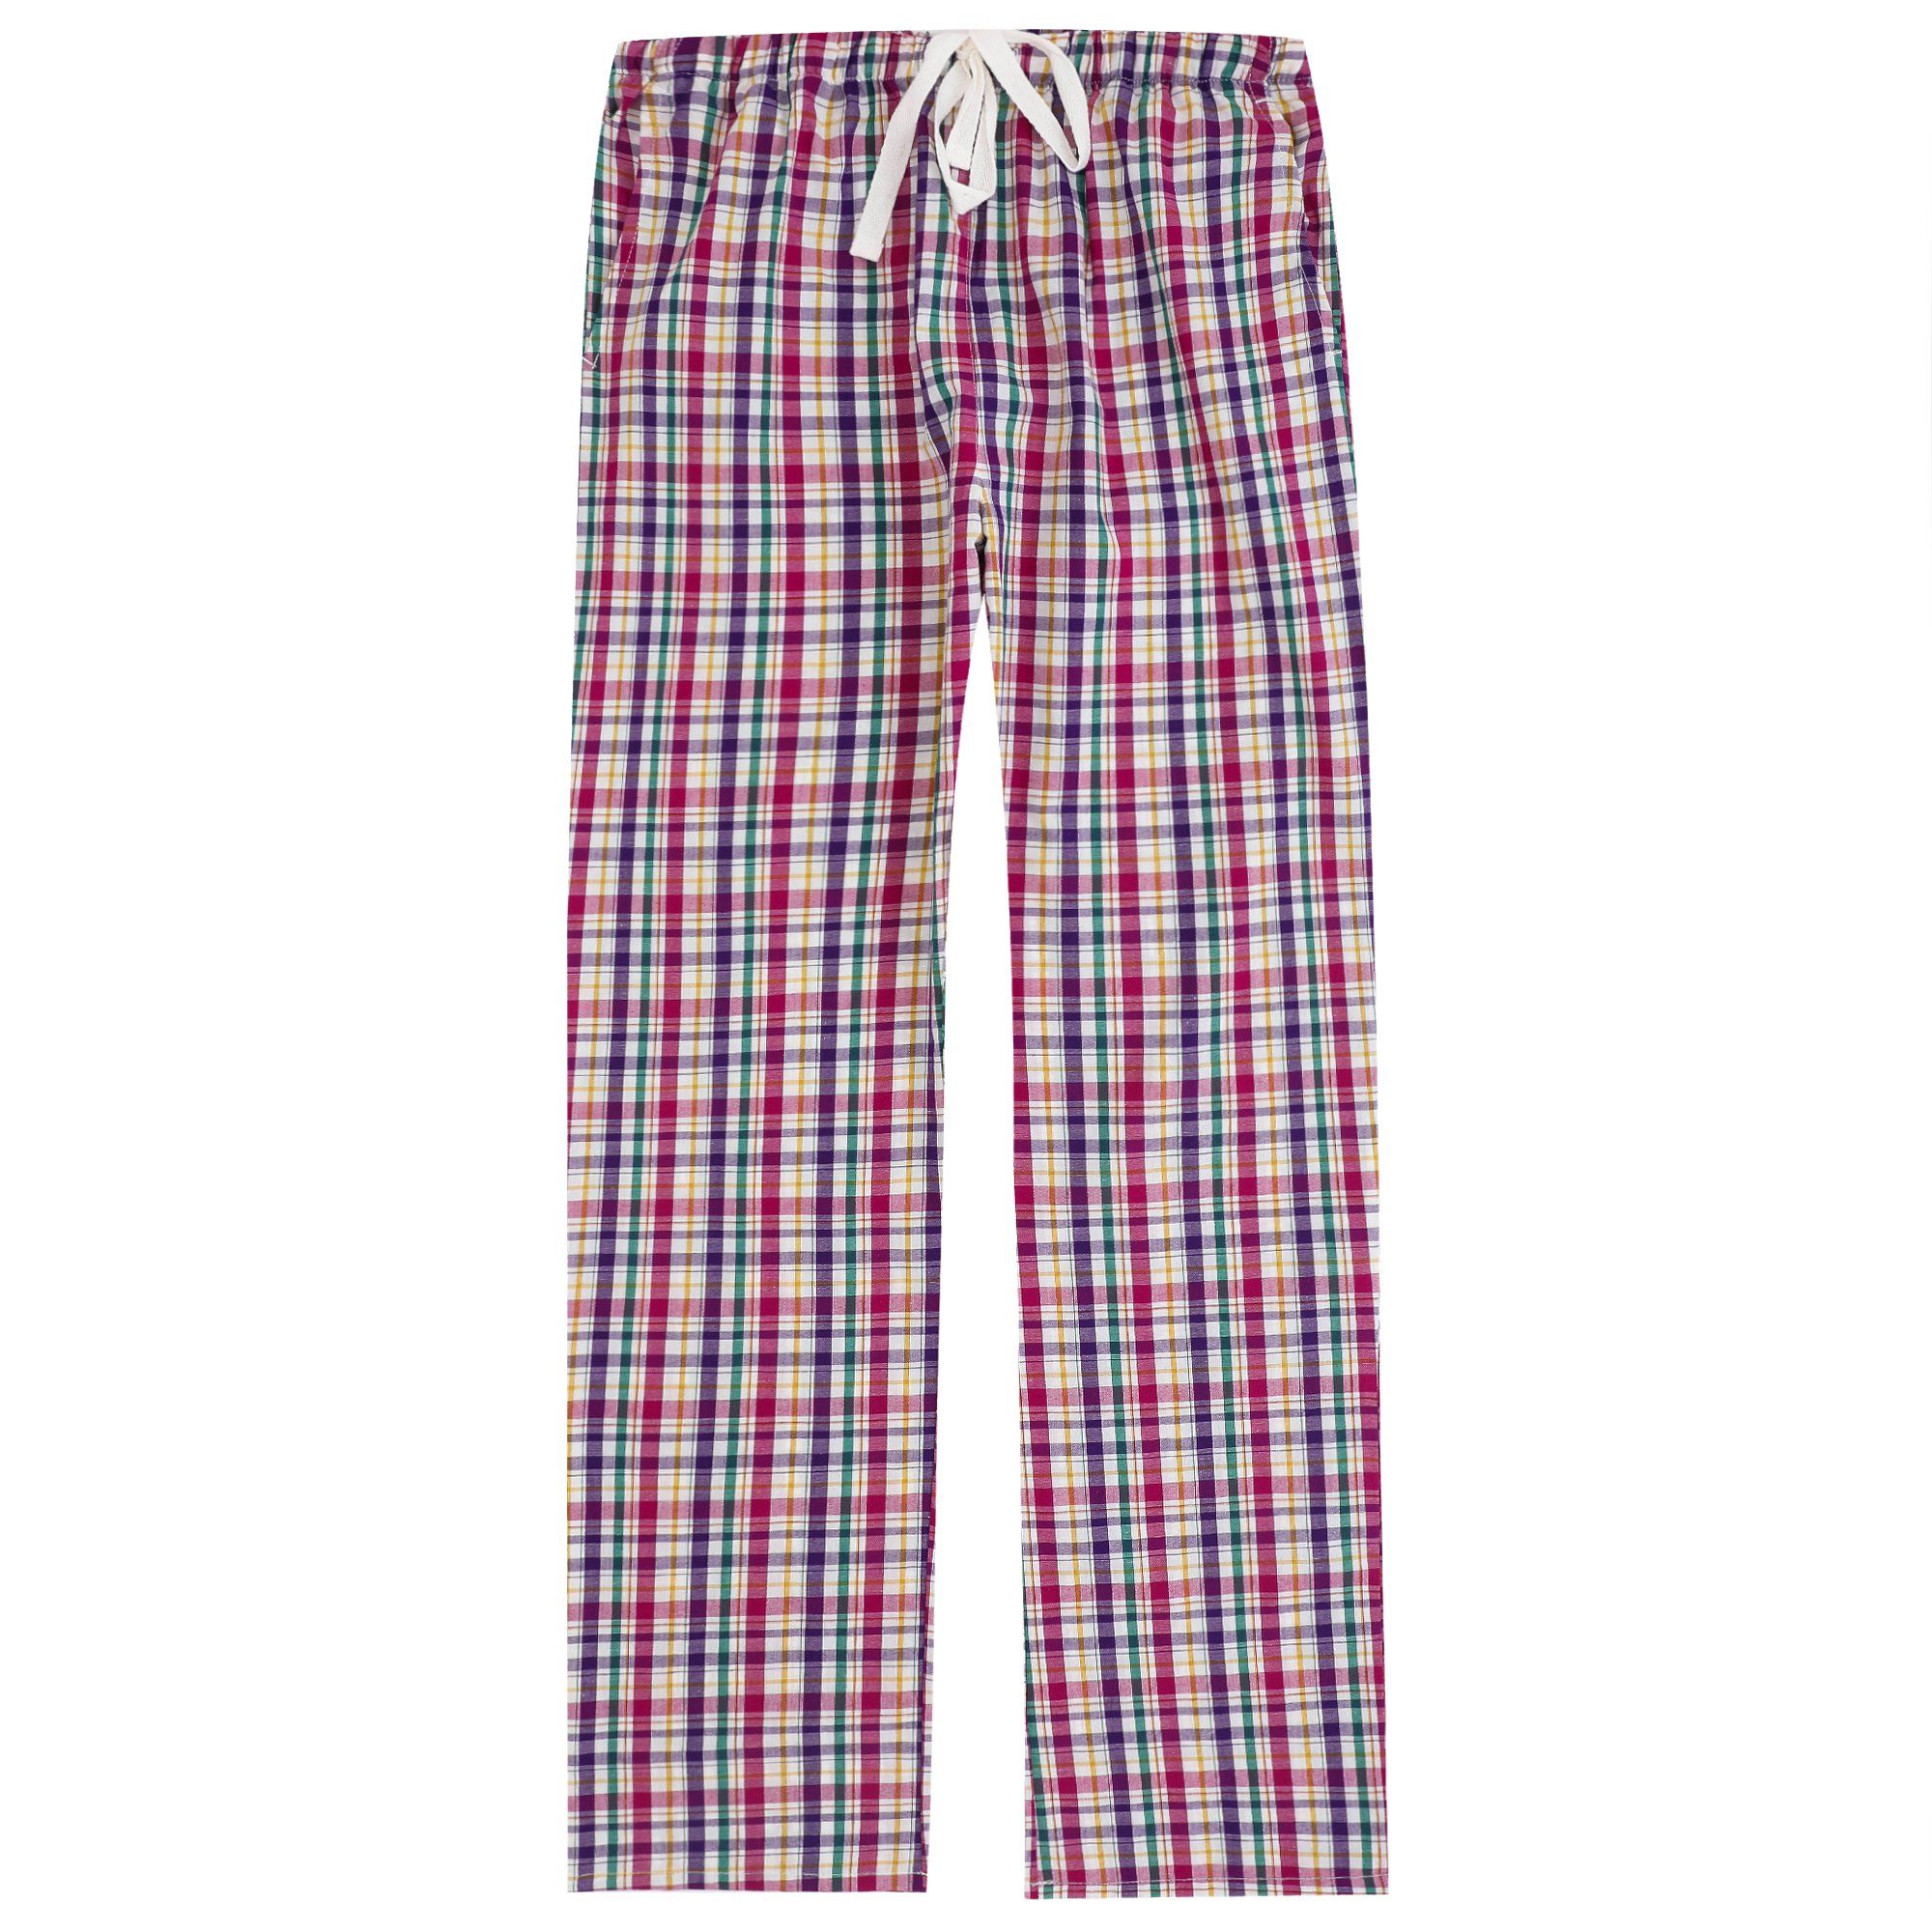 Pajama Pants for Women - 100% Cotton Lounge Pants Women PJ Pants ...